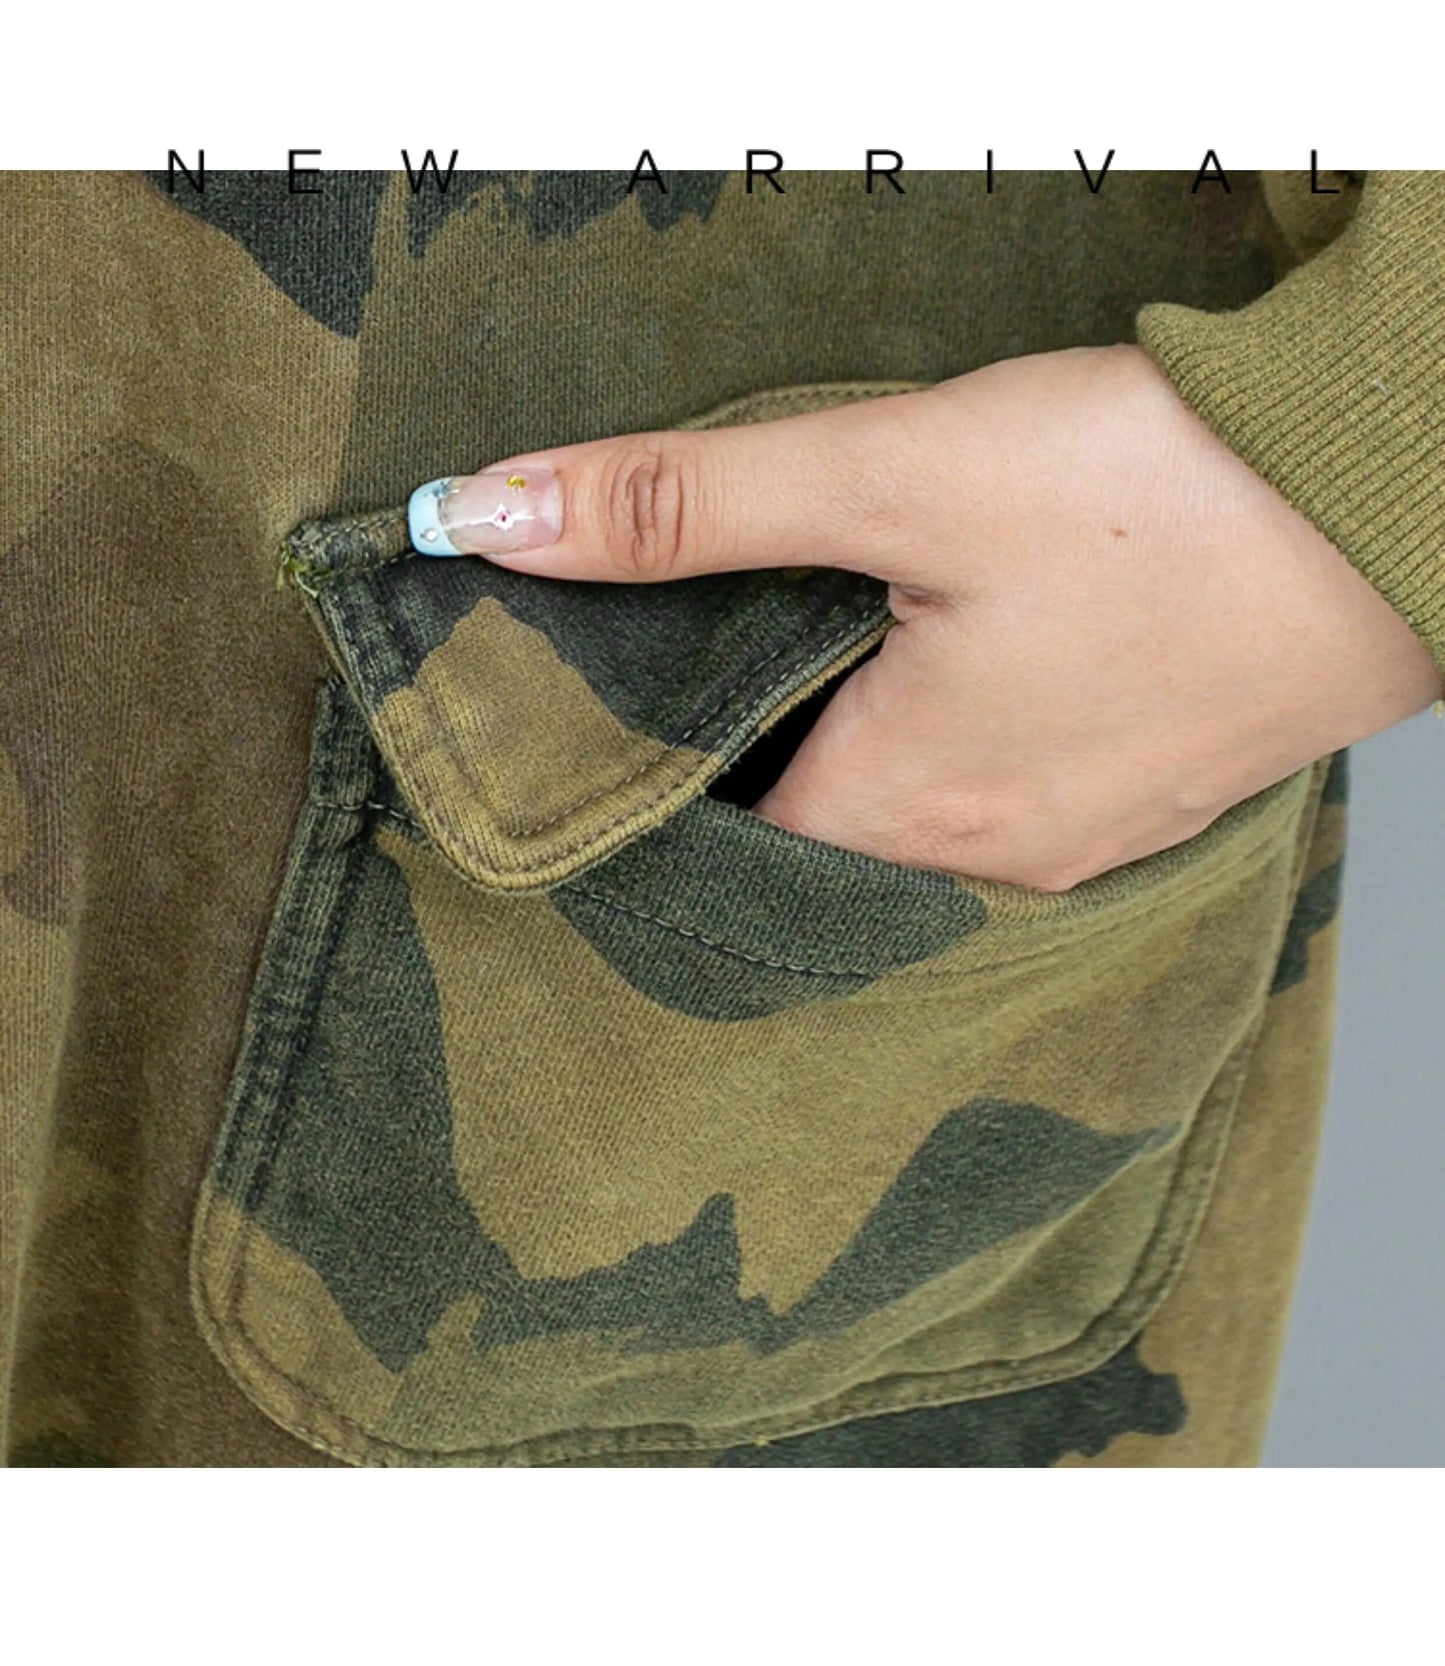 TEEK - Camouflage Long Sleeved Hooded Jumpsuit JUMPSUIT theteekdotcom   